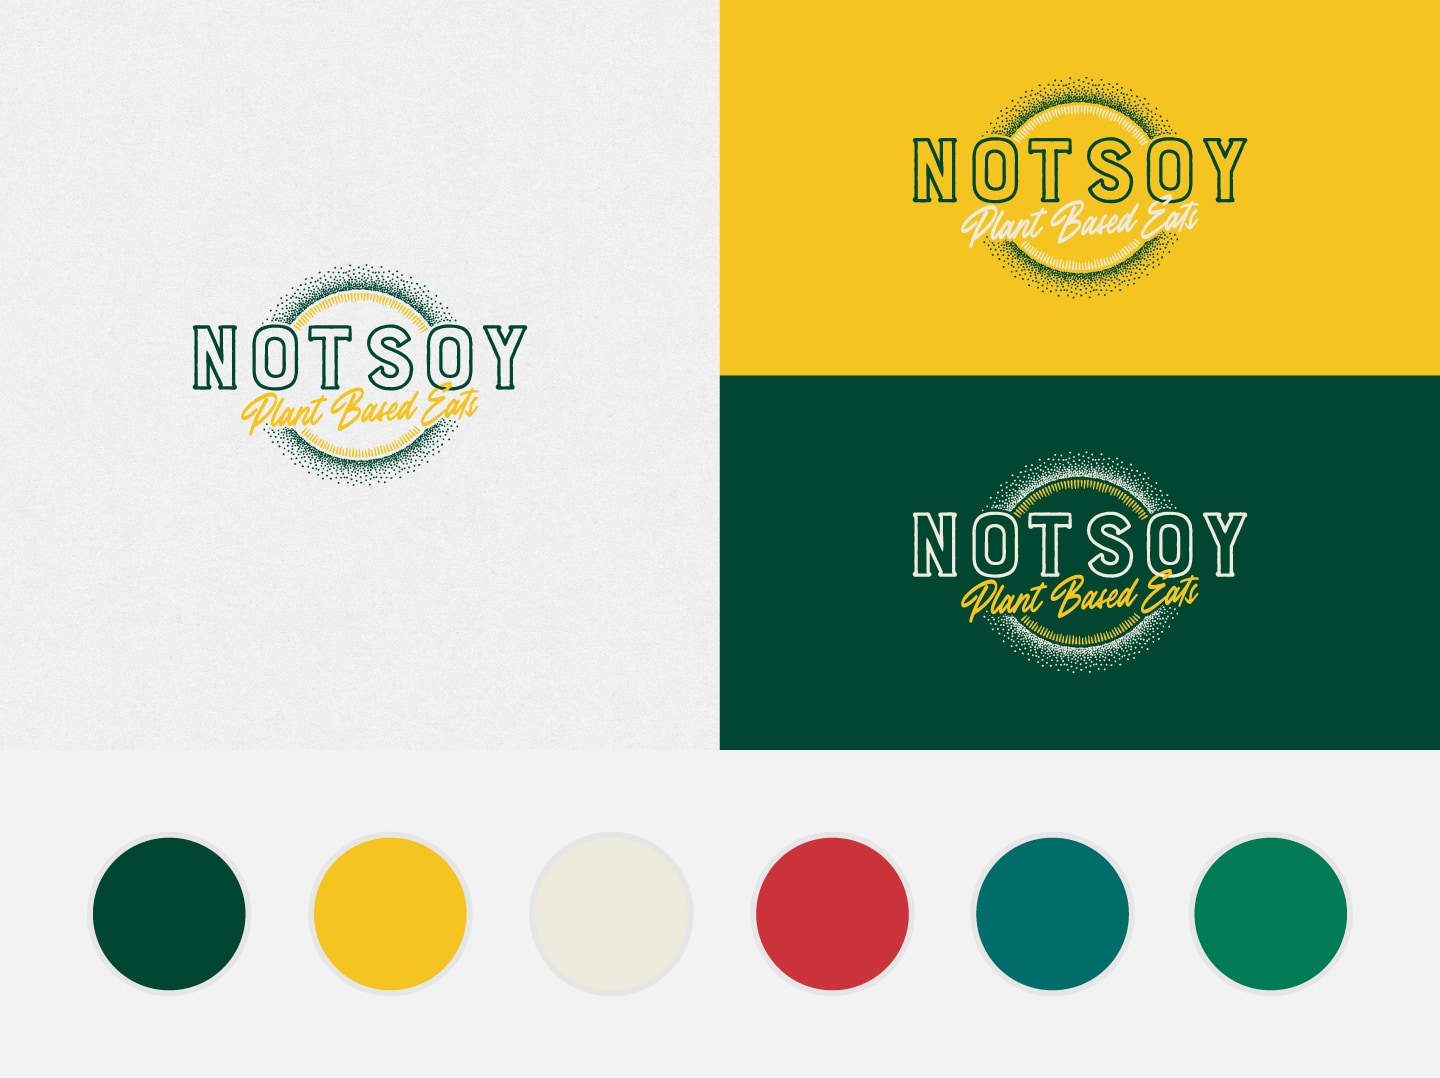 NotSoy Logos